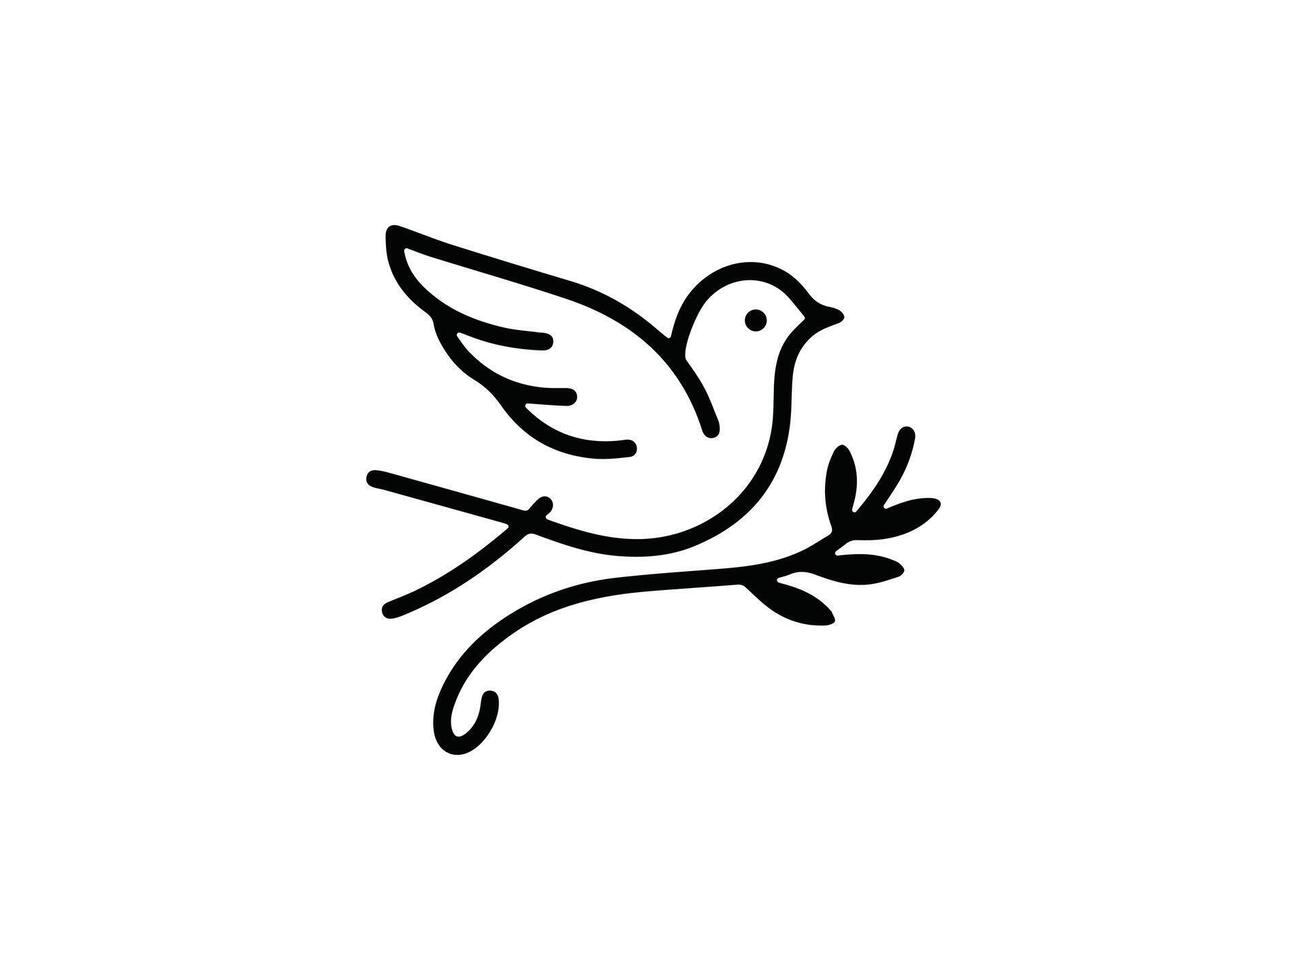 uccello logo design template vettore